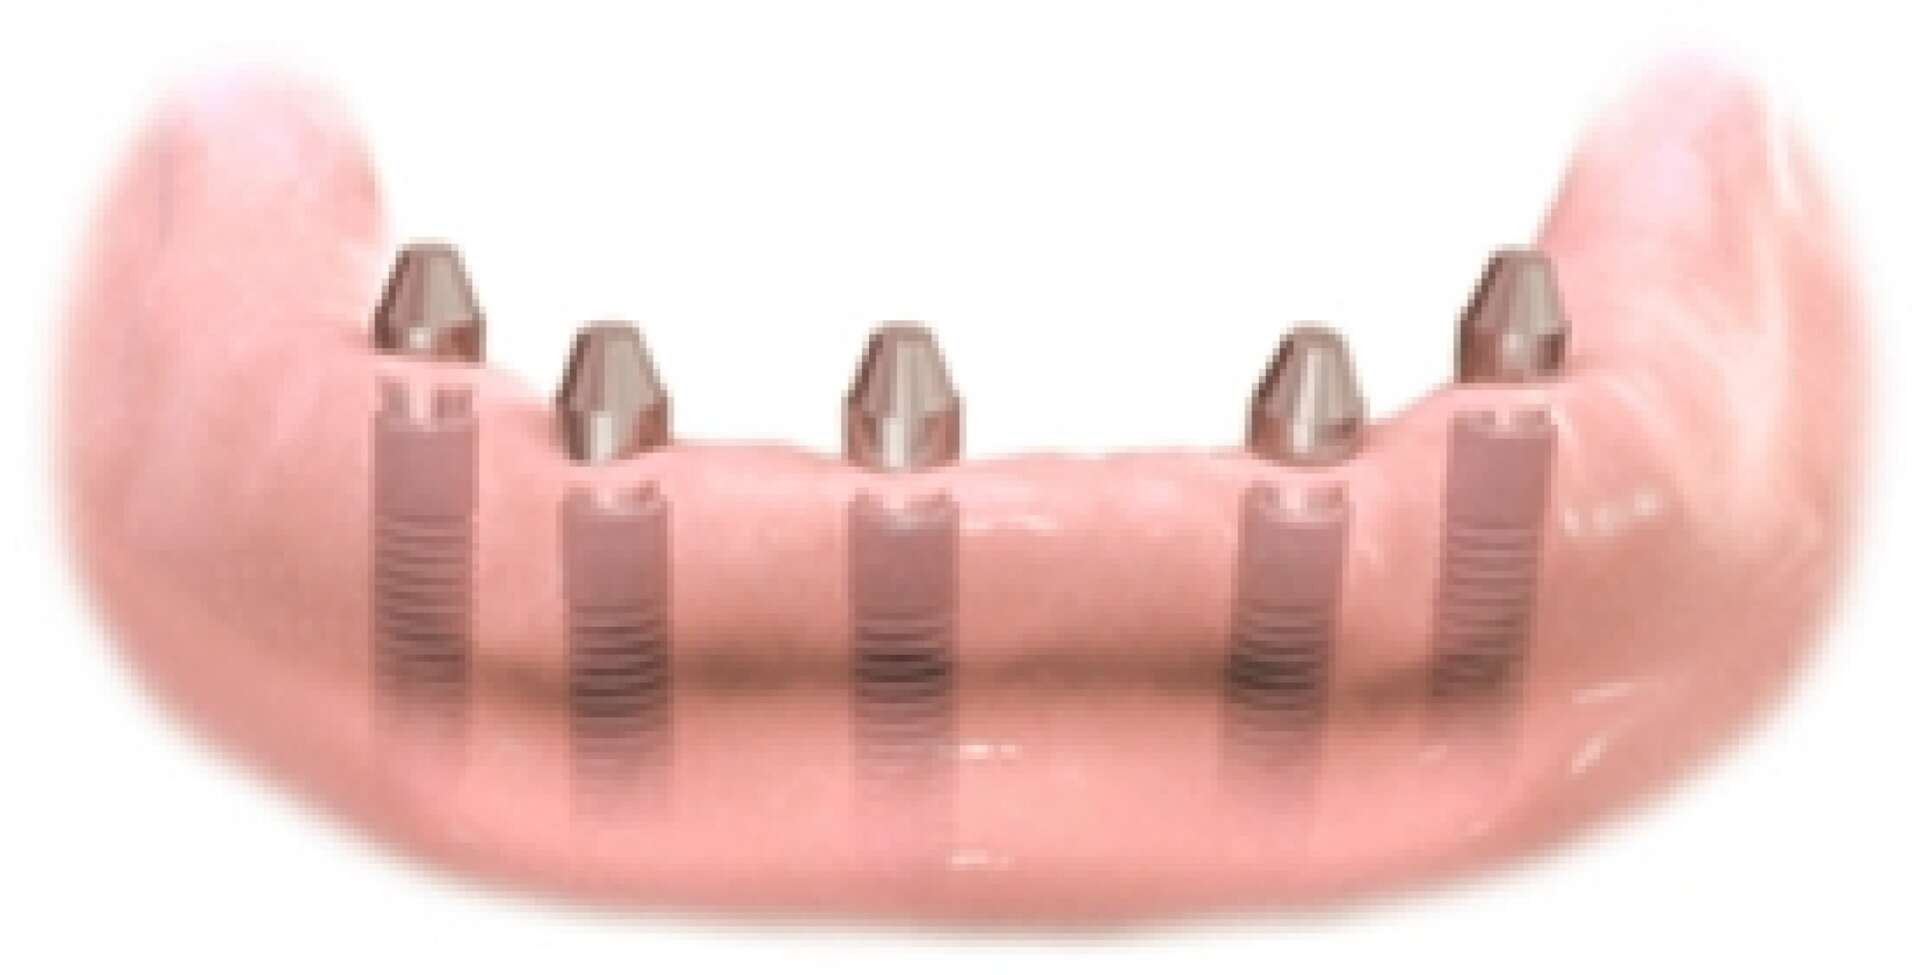 All teeth implants 2